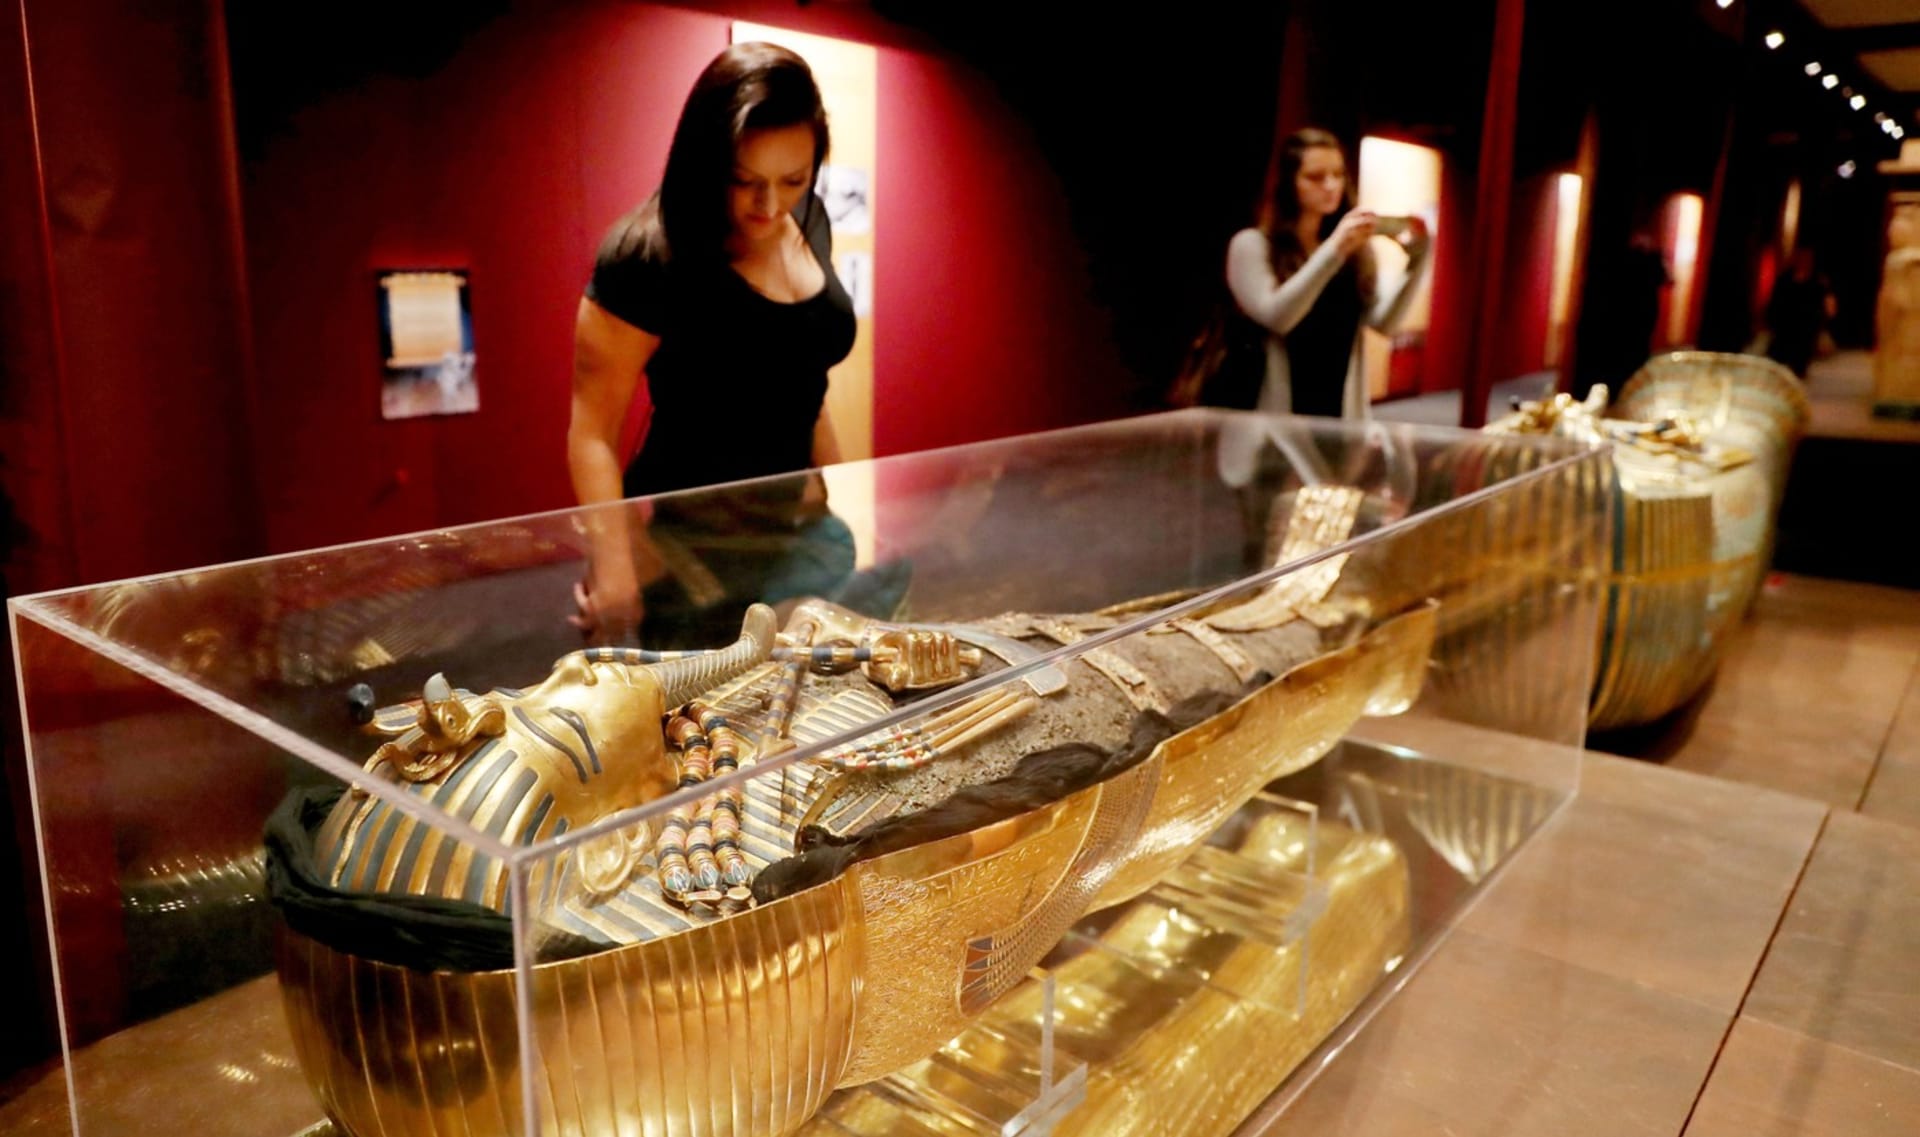 Žena obdivuje repliku posmrtné masky faraona Tutanchamona - ilustrační foto.